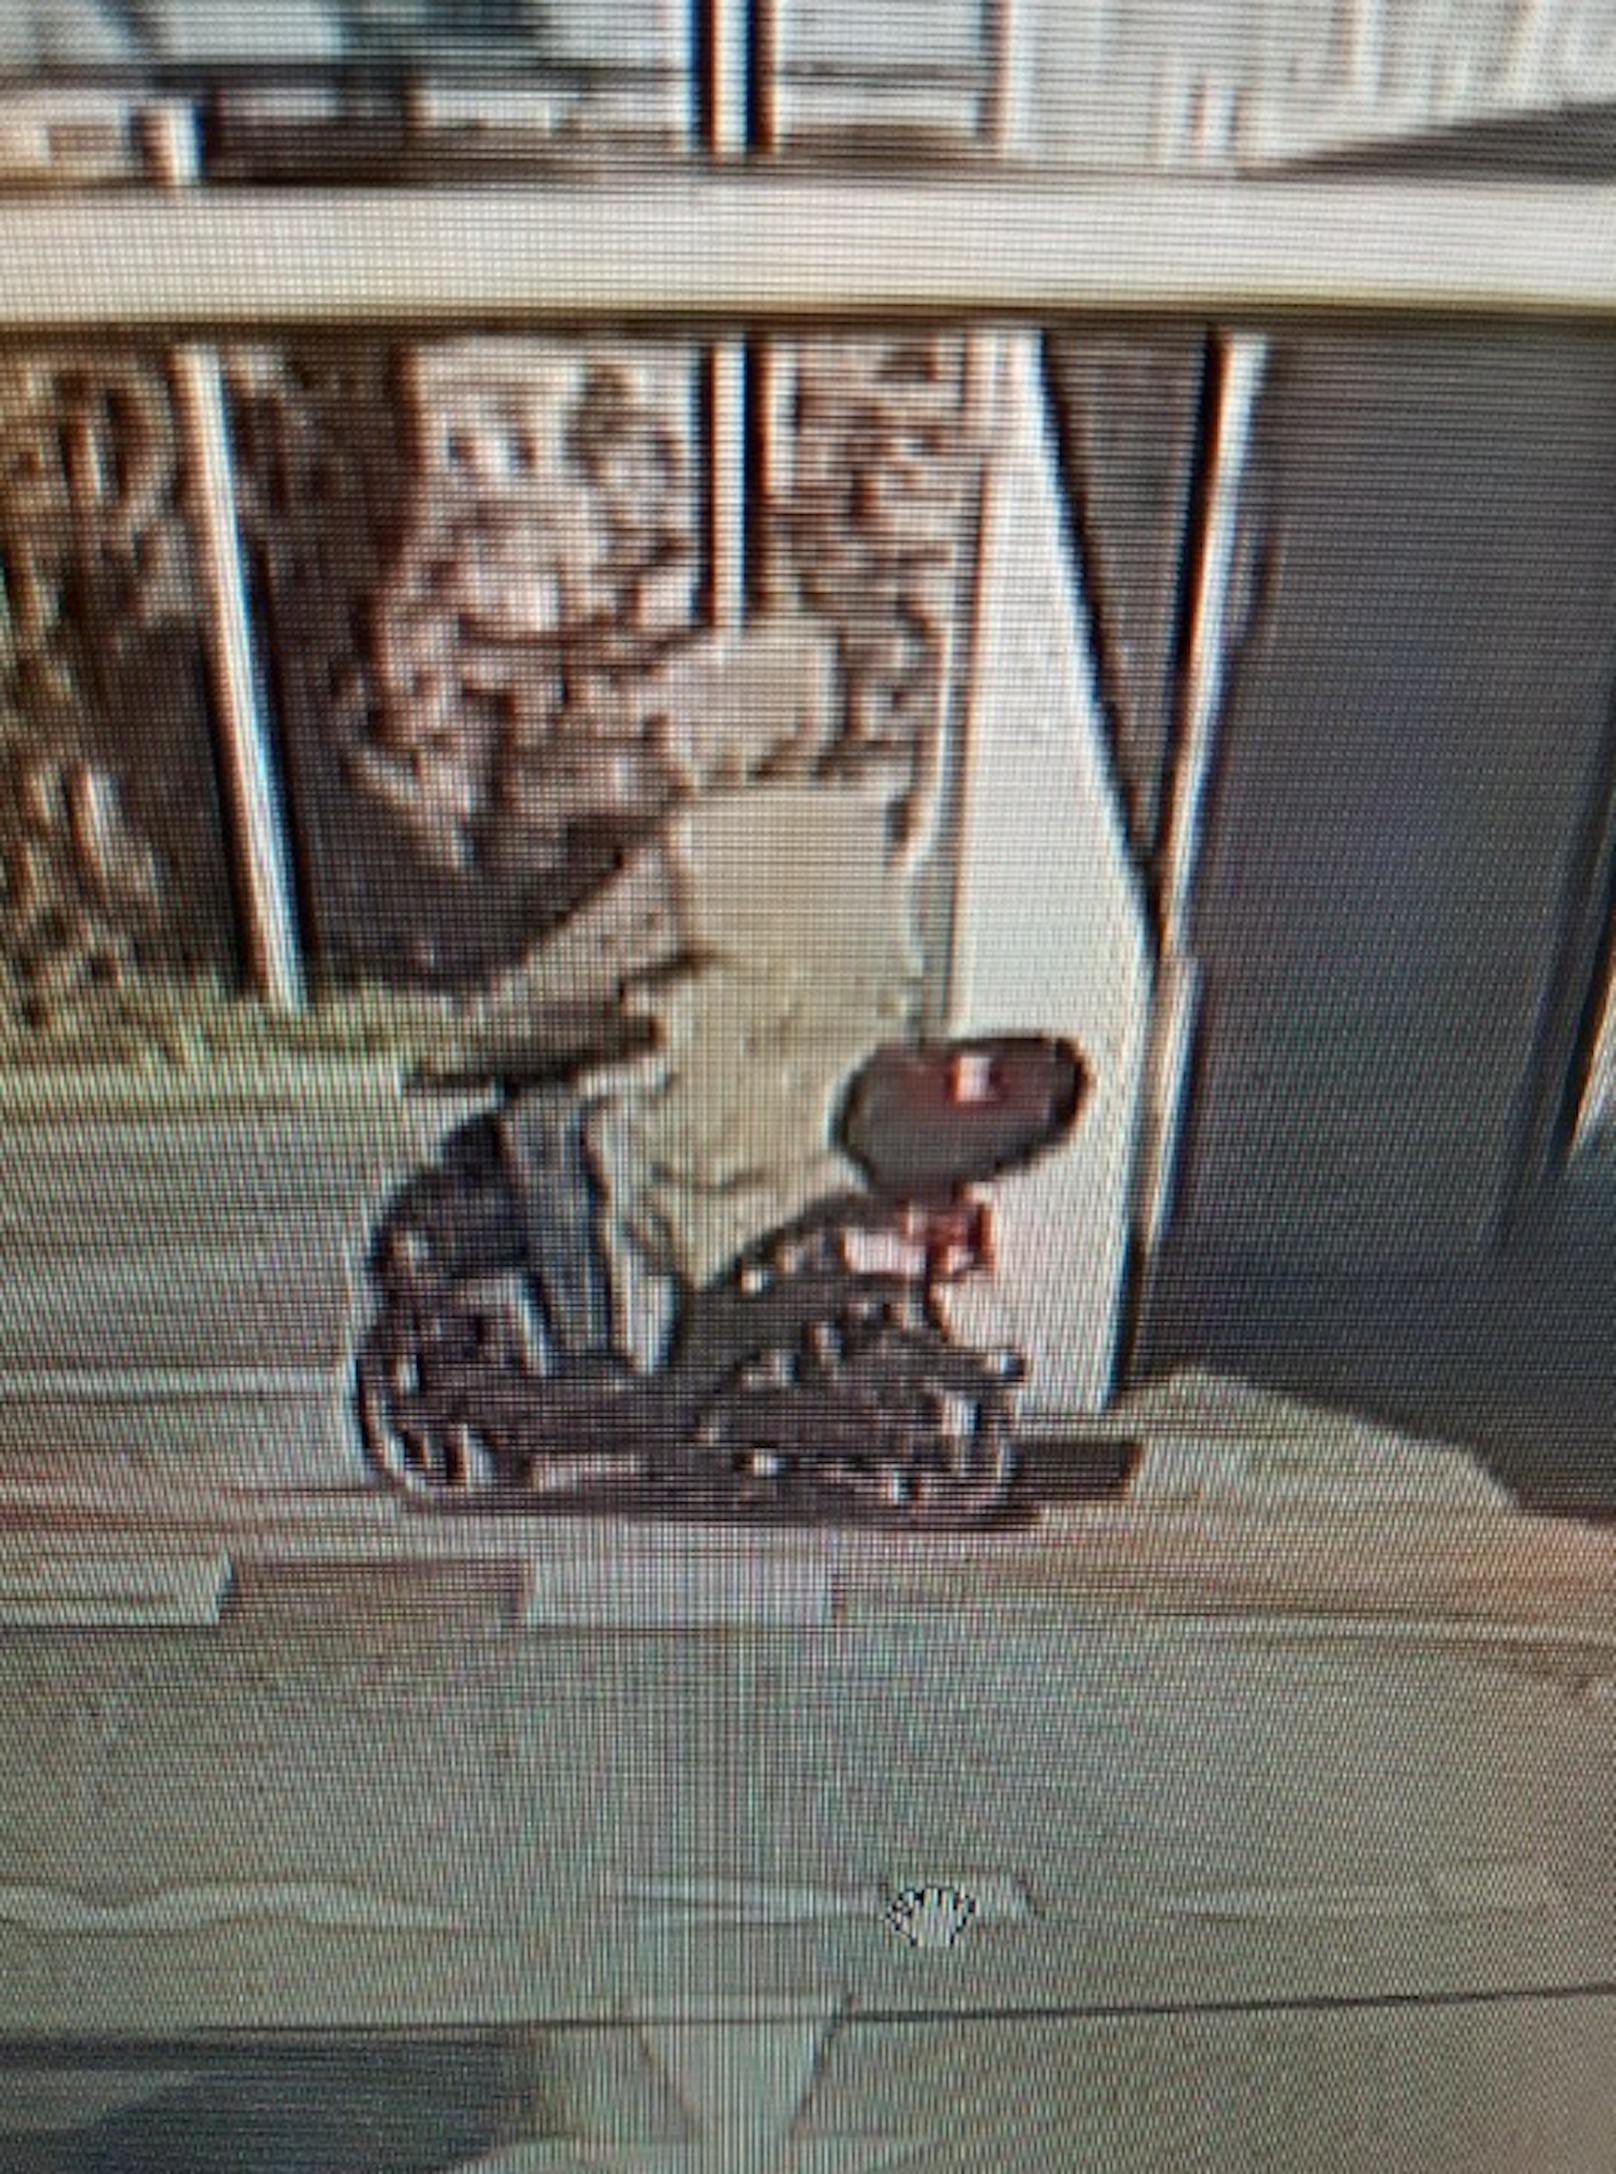 Der Täter flüchtete auf einem E-Moped.